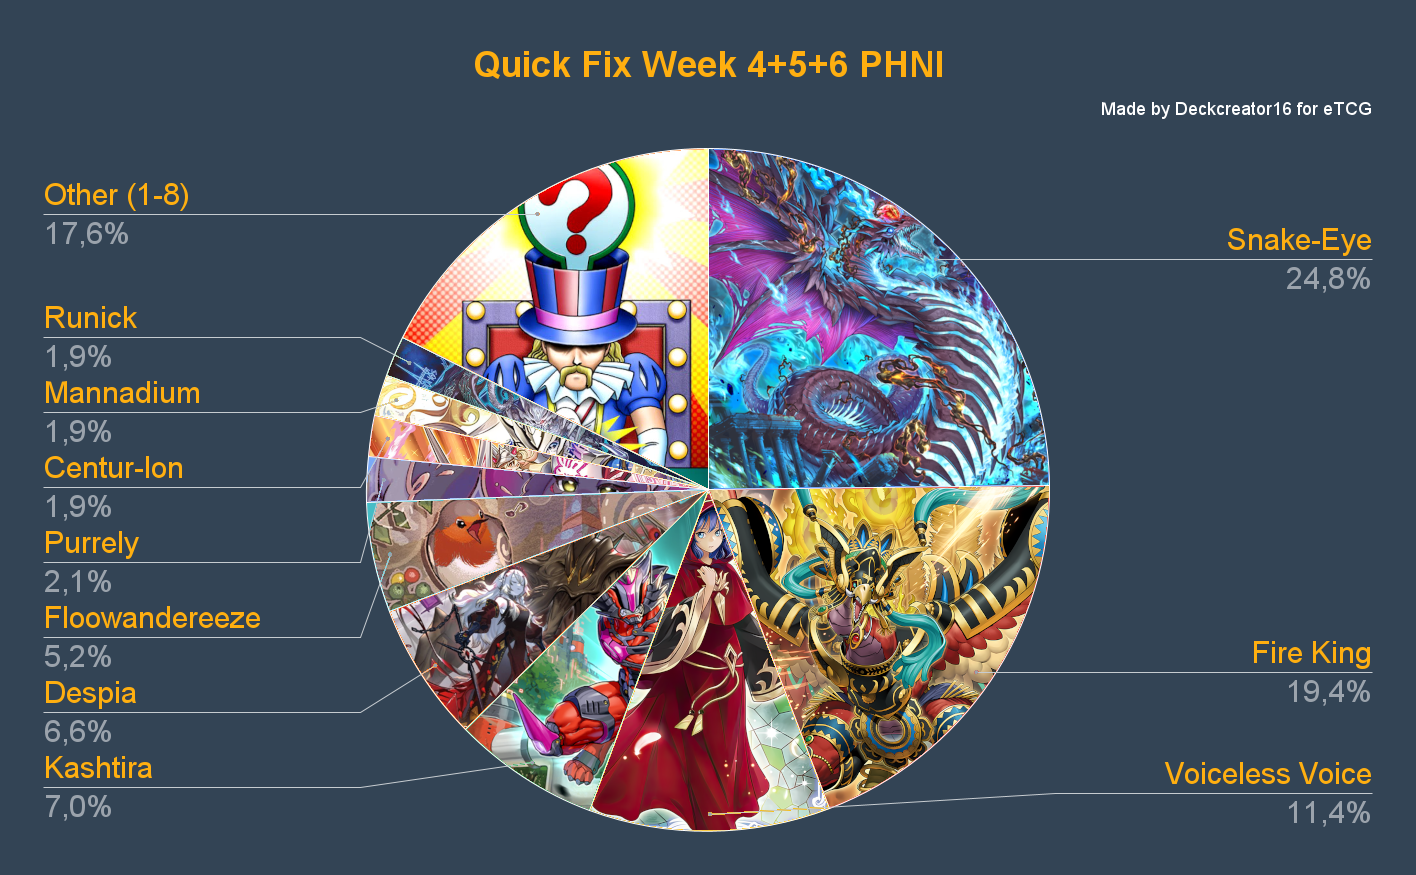 Quick Fix Woche 4,5, und 6 PHNI